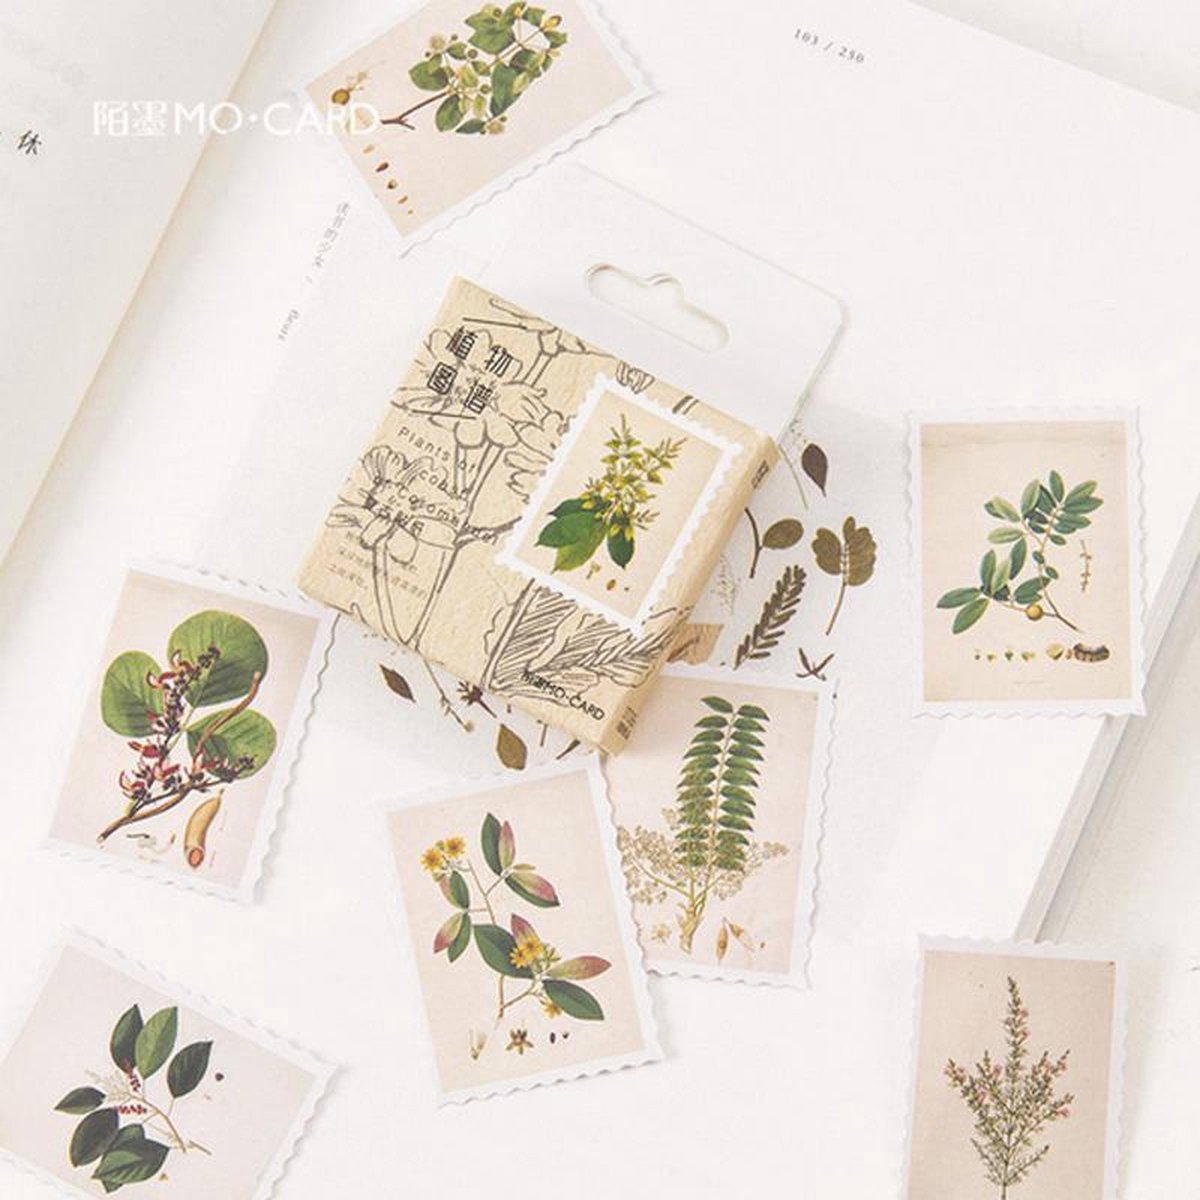 90 Stuks Leuke Scrapbook Stickers – Botanisch – Knutselen – Hobby – Stickers – Decoratie – Versiering